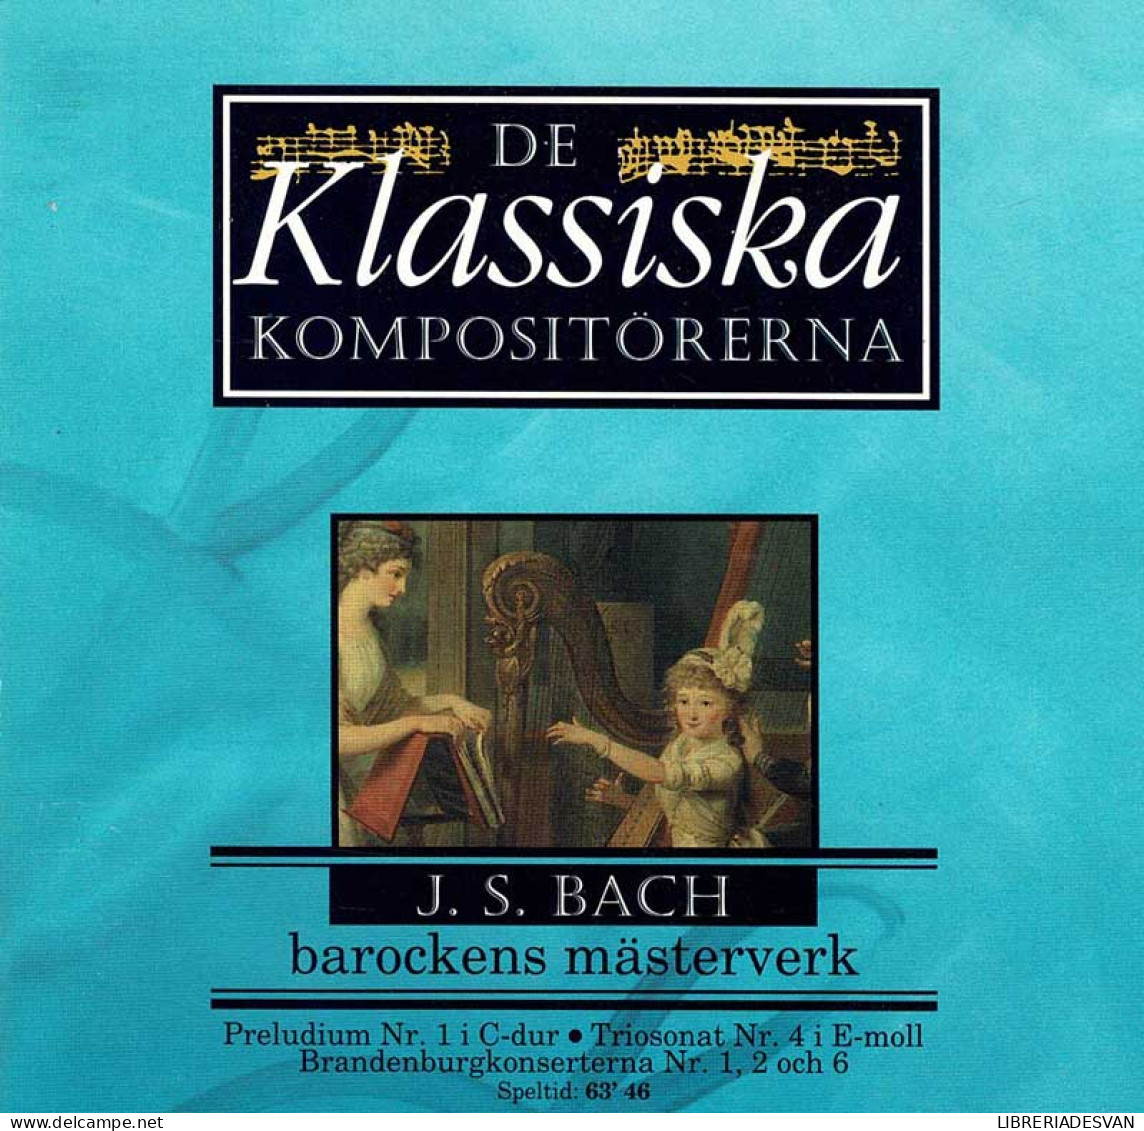 J. S. Bach - Barockens Mästerverk. CD - Classical